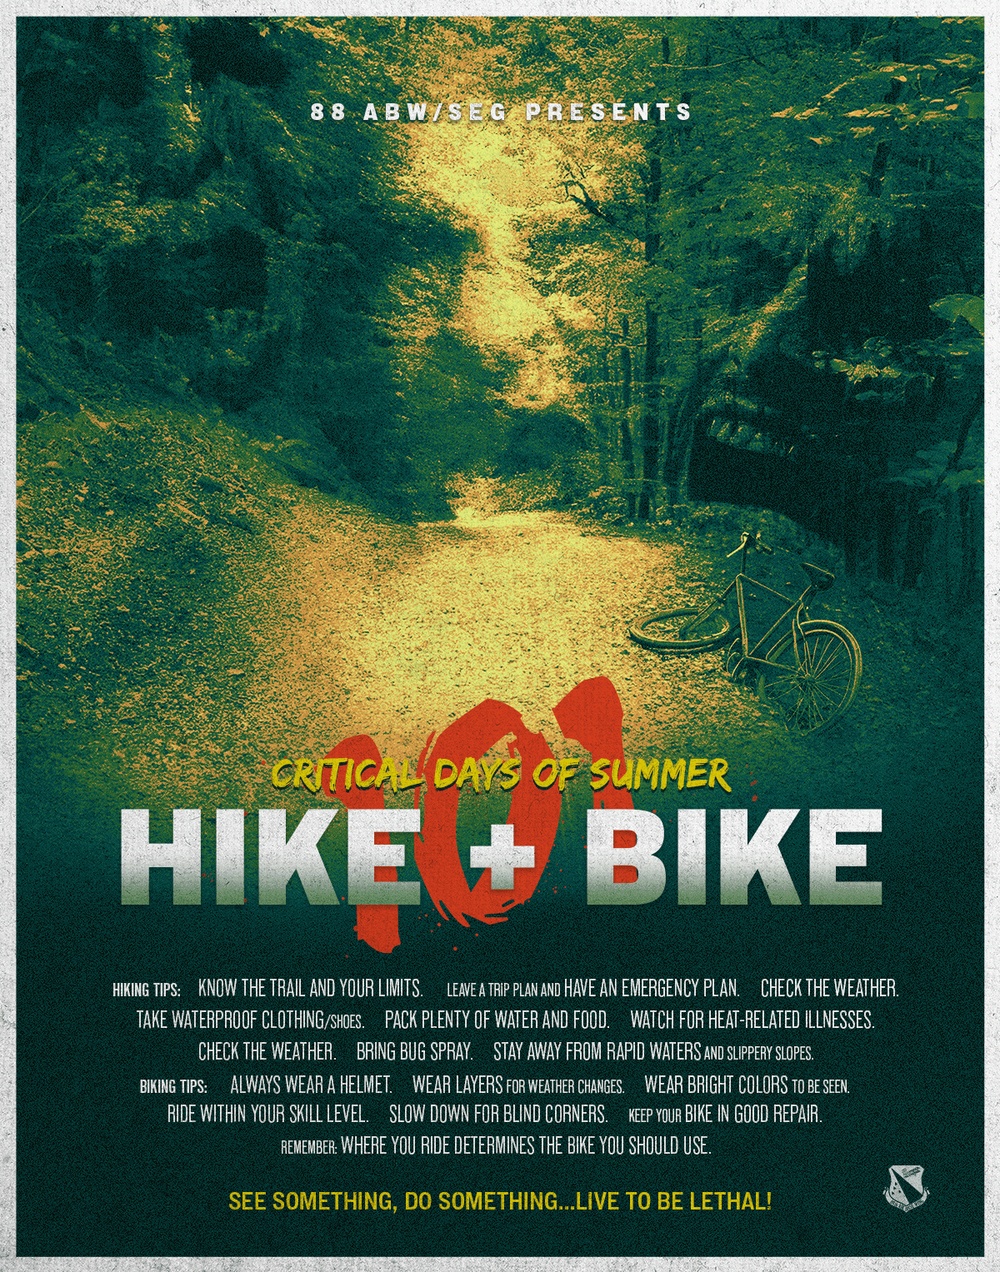 88ABW/SEG presents: 101 Critical Days of Summer - Hike + Bike